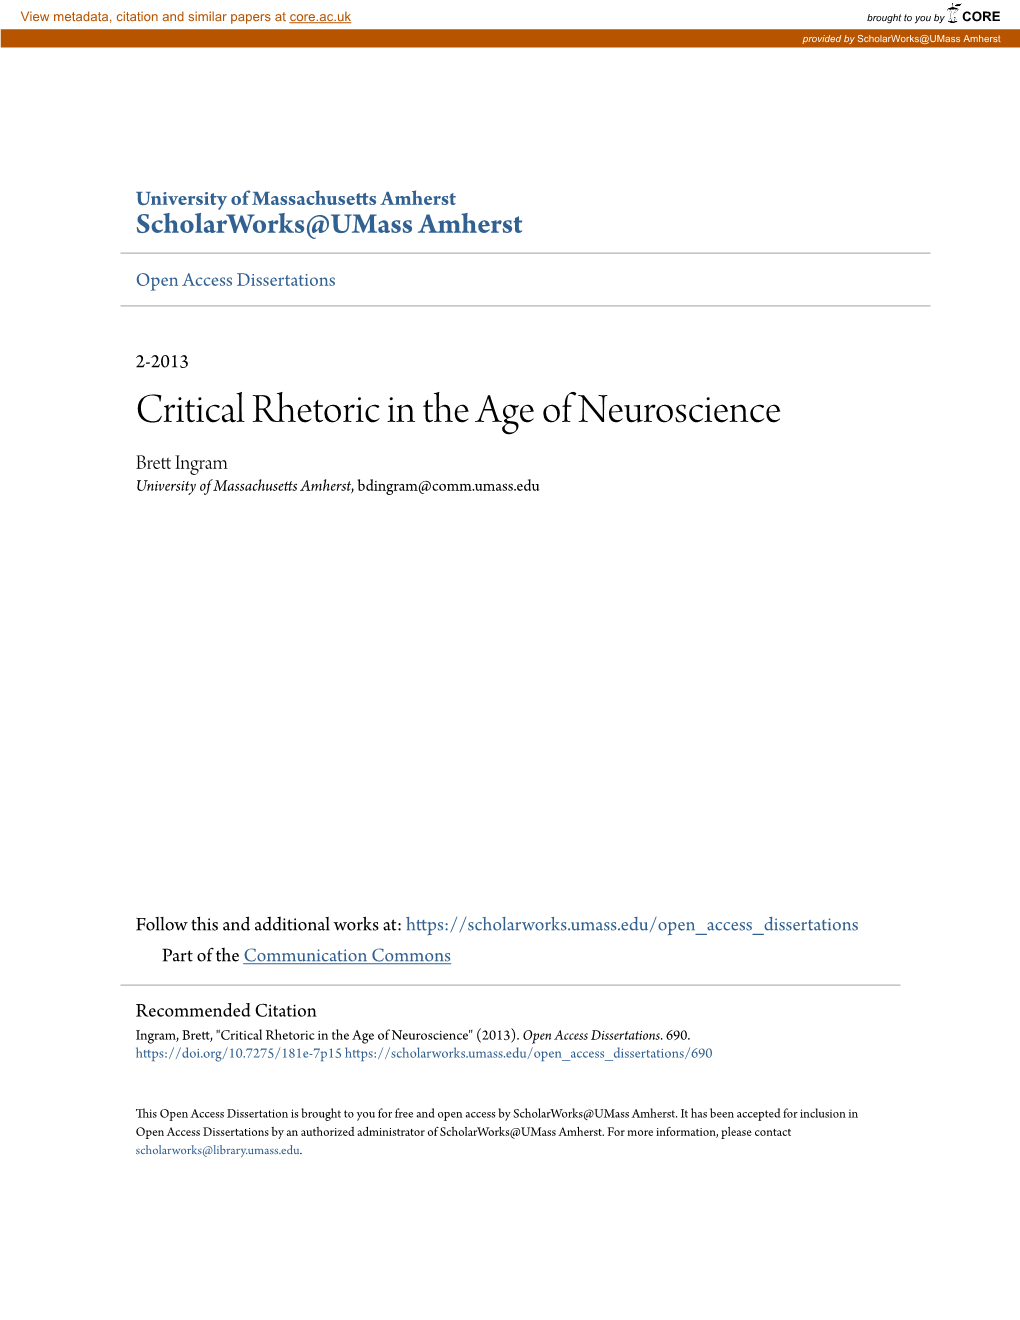 Critical Rhetoric in the Age of Neuroscience Brett Ni Gram University of Massachusetts Amherst, Bdingram@Comm.Umass.Edu